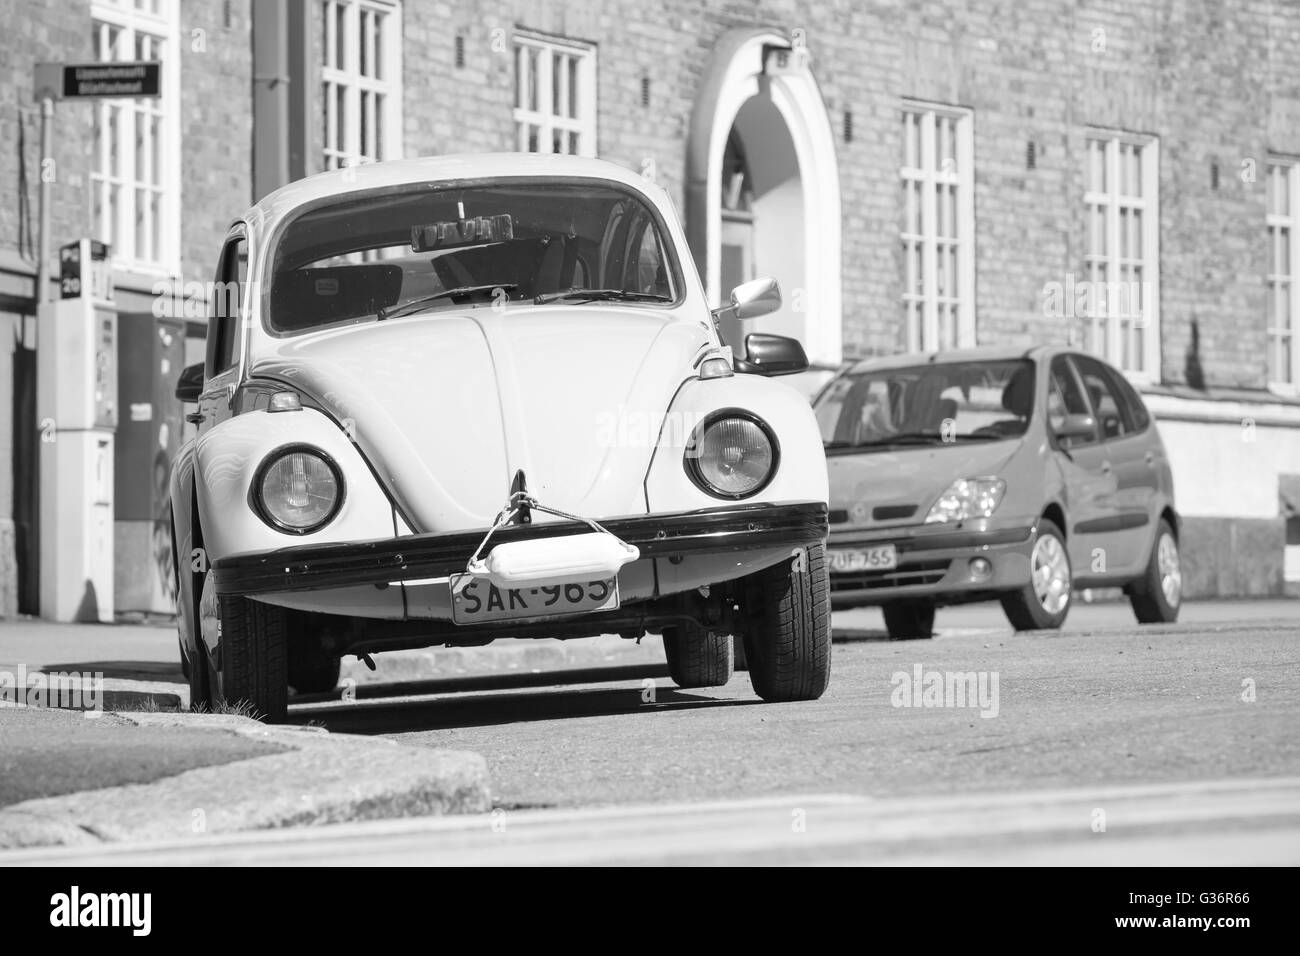 Helsinki, Finlandia - 7 Maggio 2016: vecchia Volkswagen Beetle è parcheggiato su una strada, vista frontale, foto in bianco e nero Foto Stock